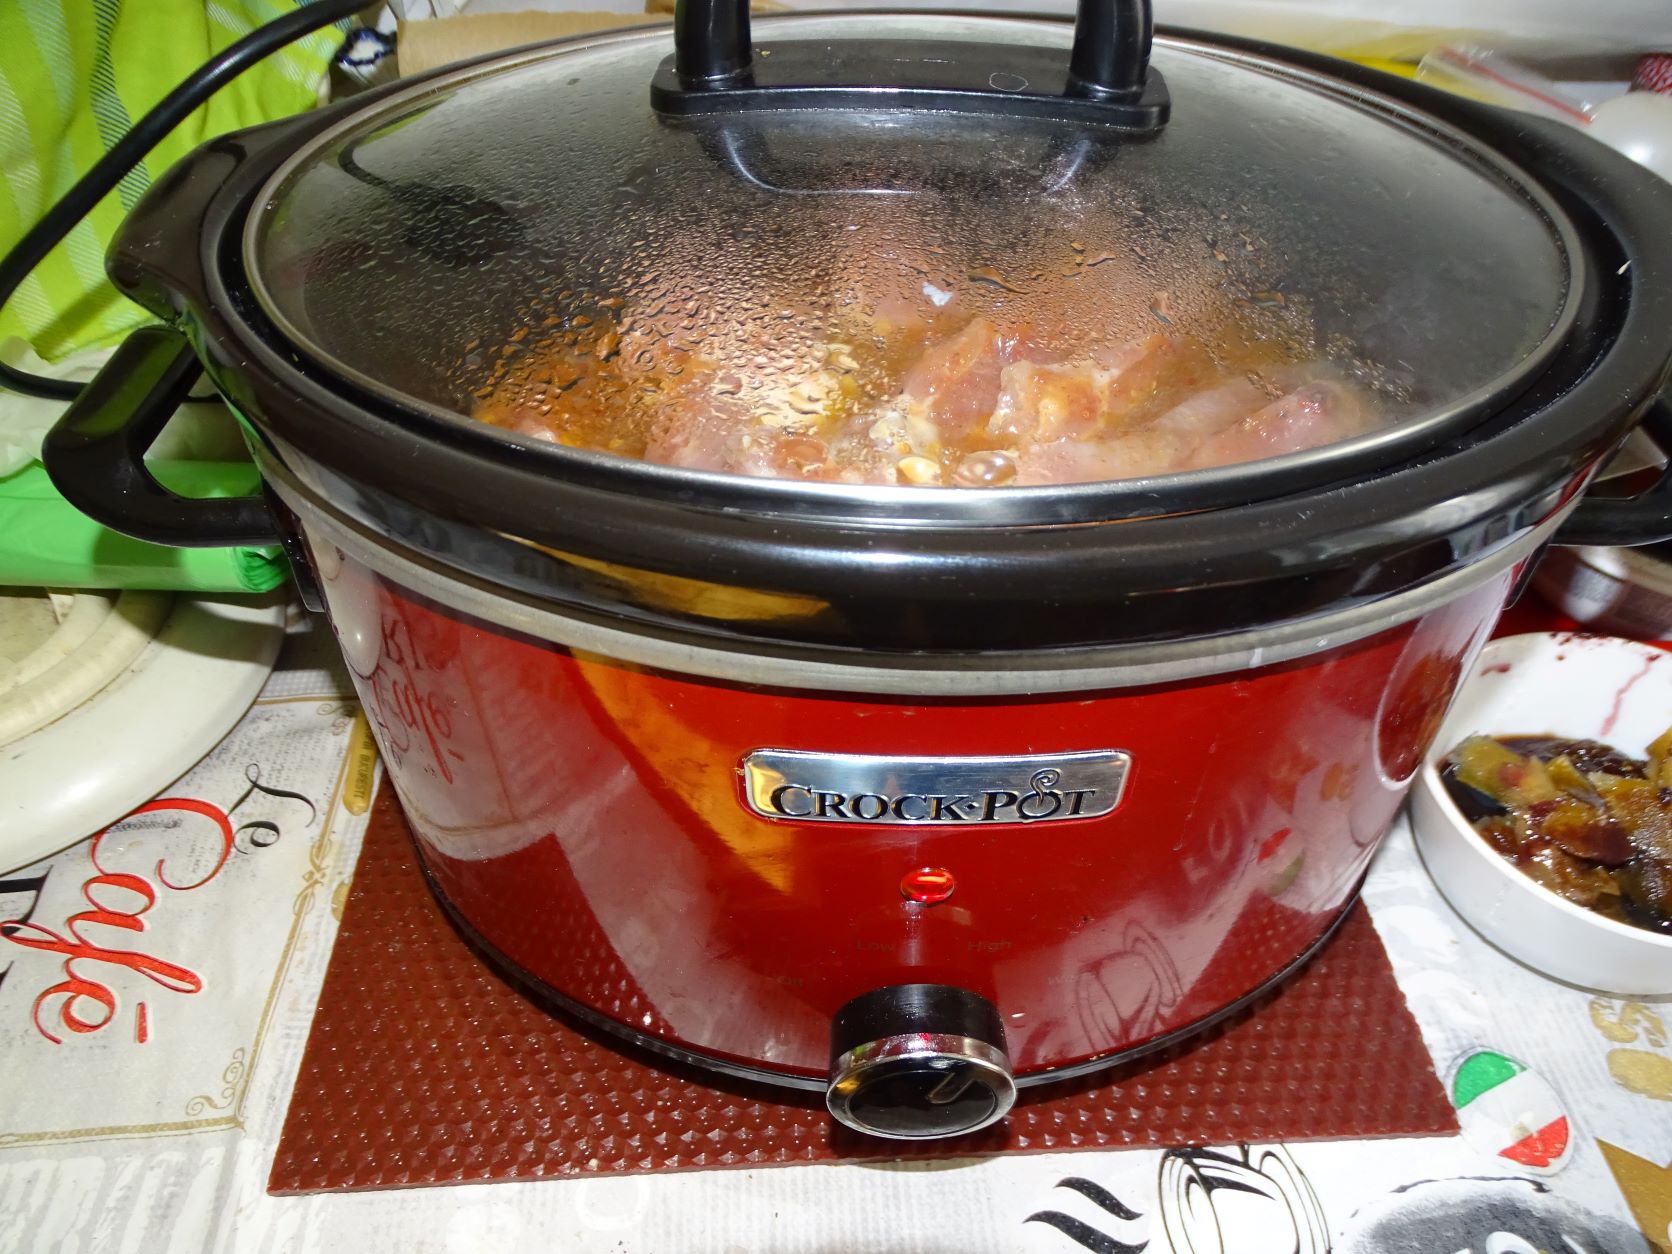 Coaste de porc gatite la slow cooker Crock Pot